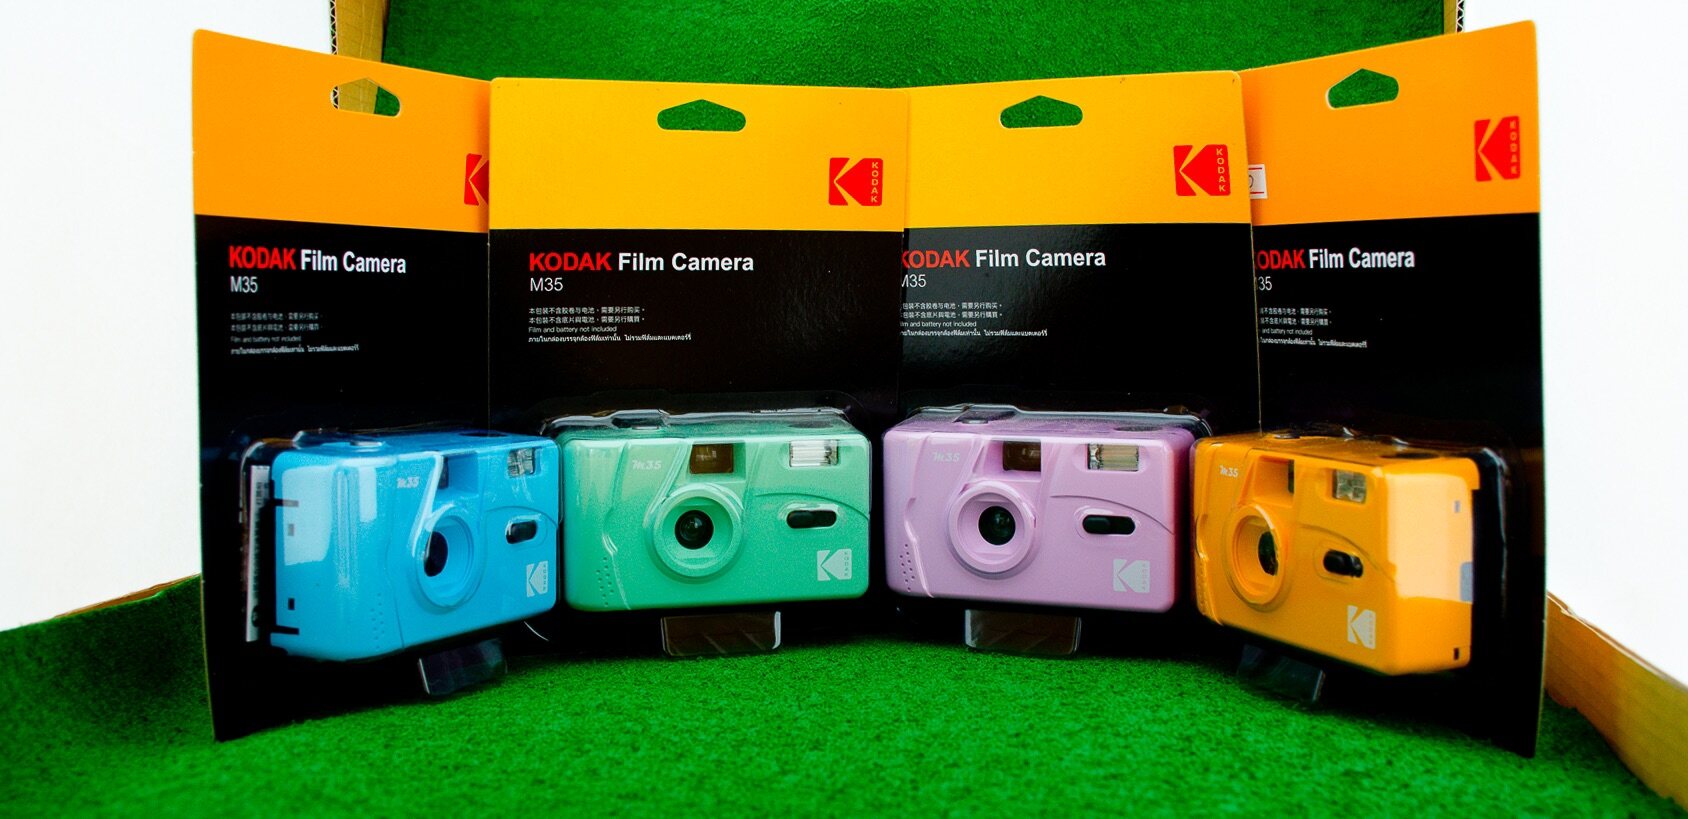 กล้องฟิล์ม Kodak Film Camera M35